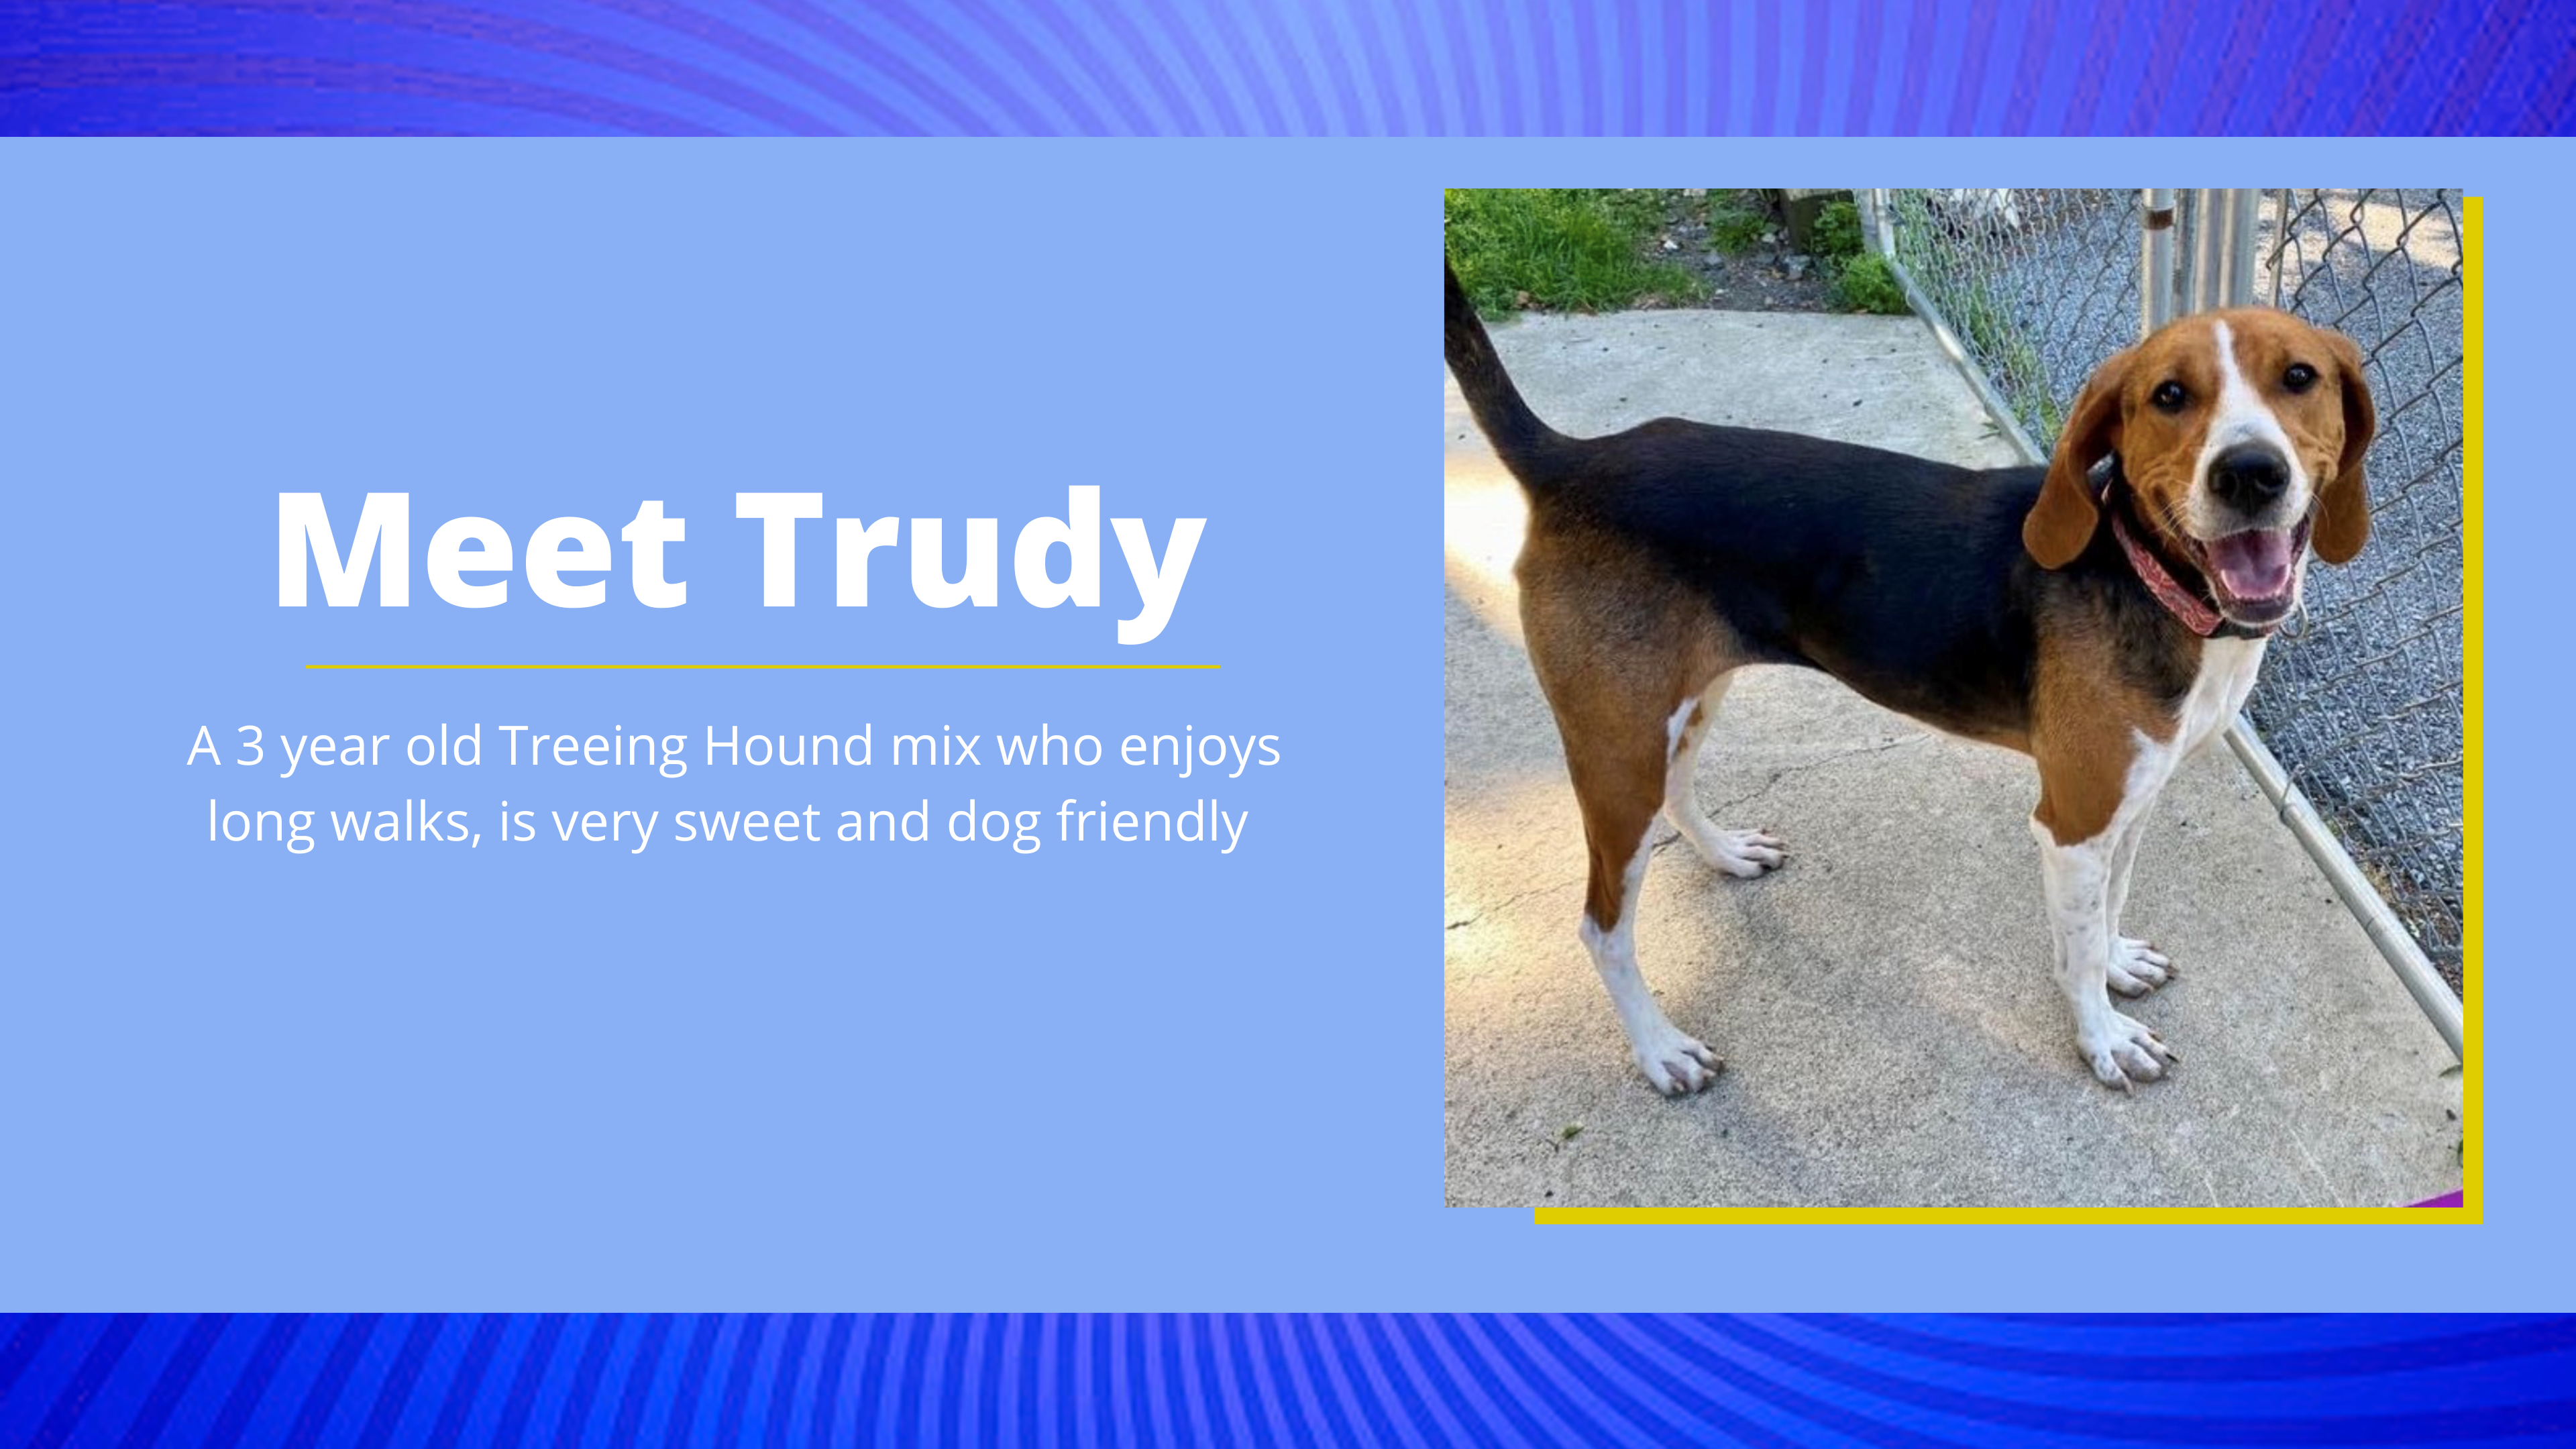 Meet Trudy